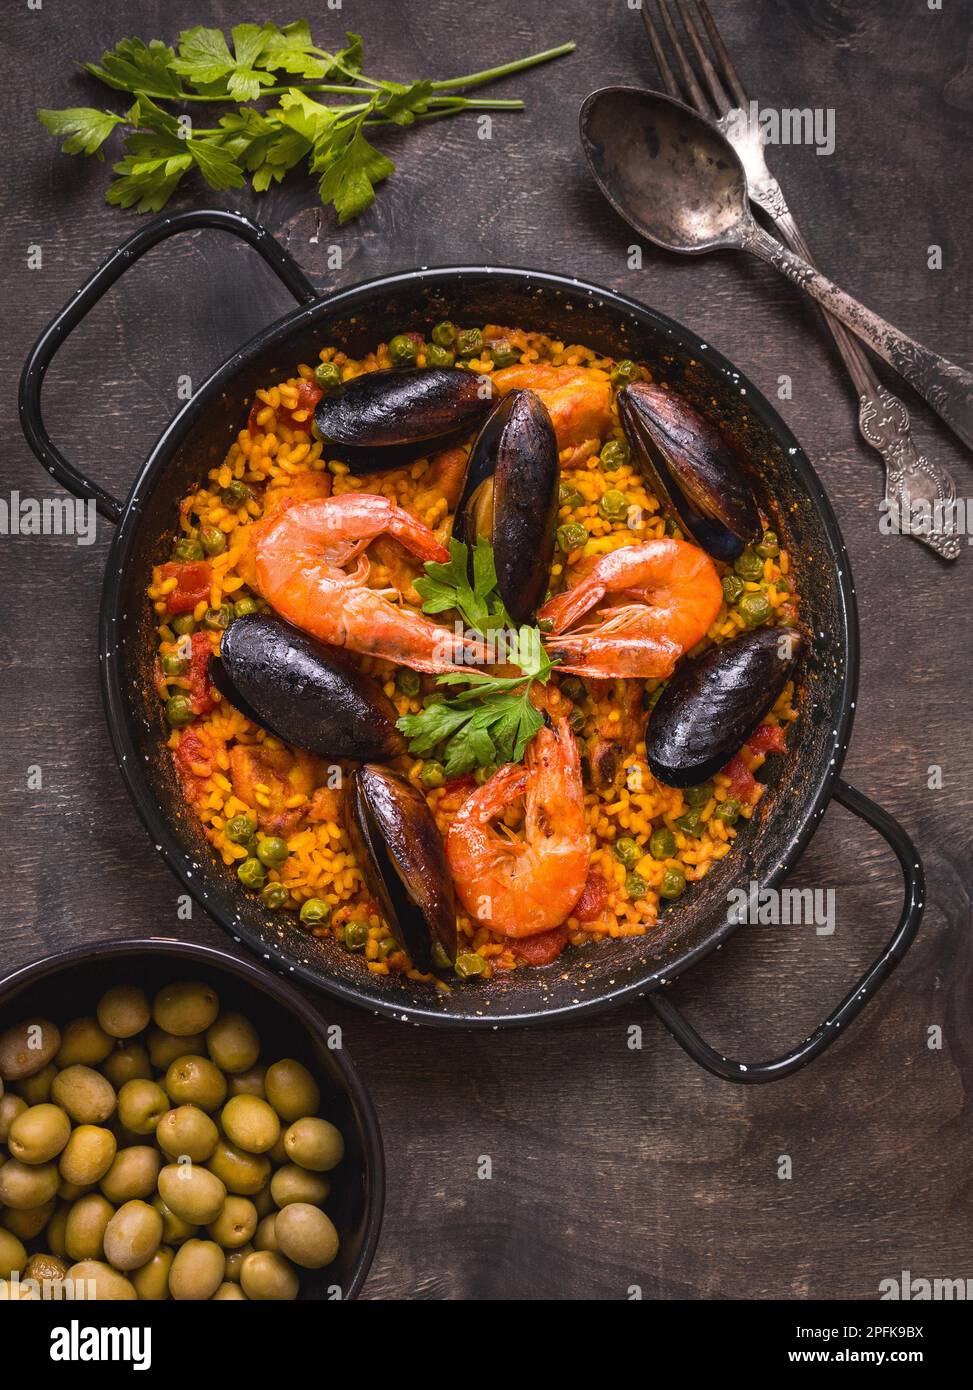 Paella in schwarzer Pfanne mit Reis, Garnelen, Muscheln, Tintenfisch und Fleisch, Schüssel mit Oliven und altem Besteck. Meeresfrüchte-Paella, traditionelles spanisches Gericht. Stockfoto